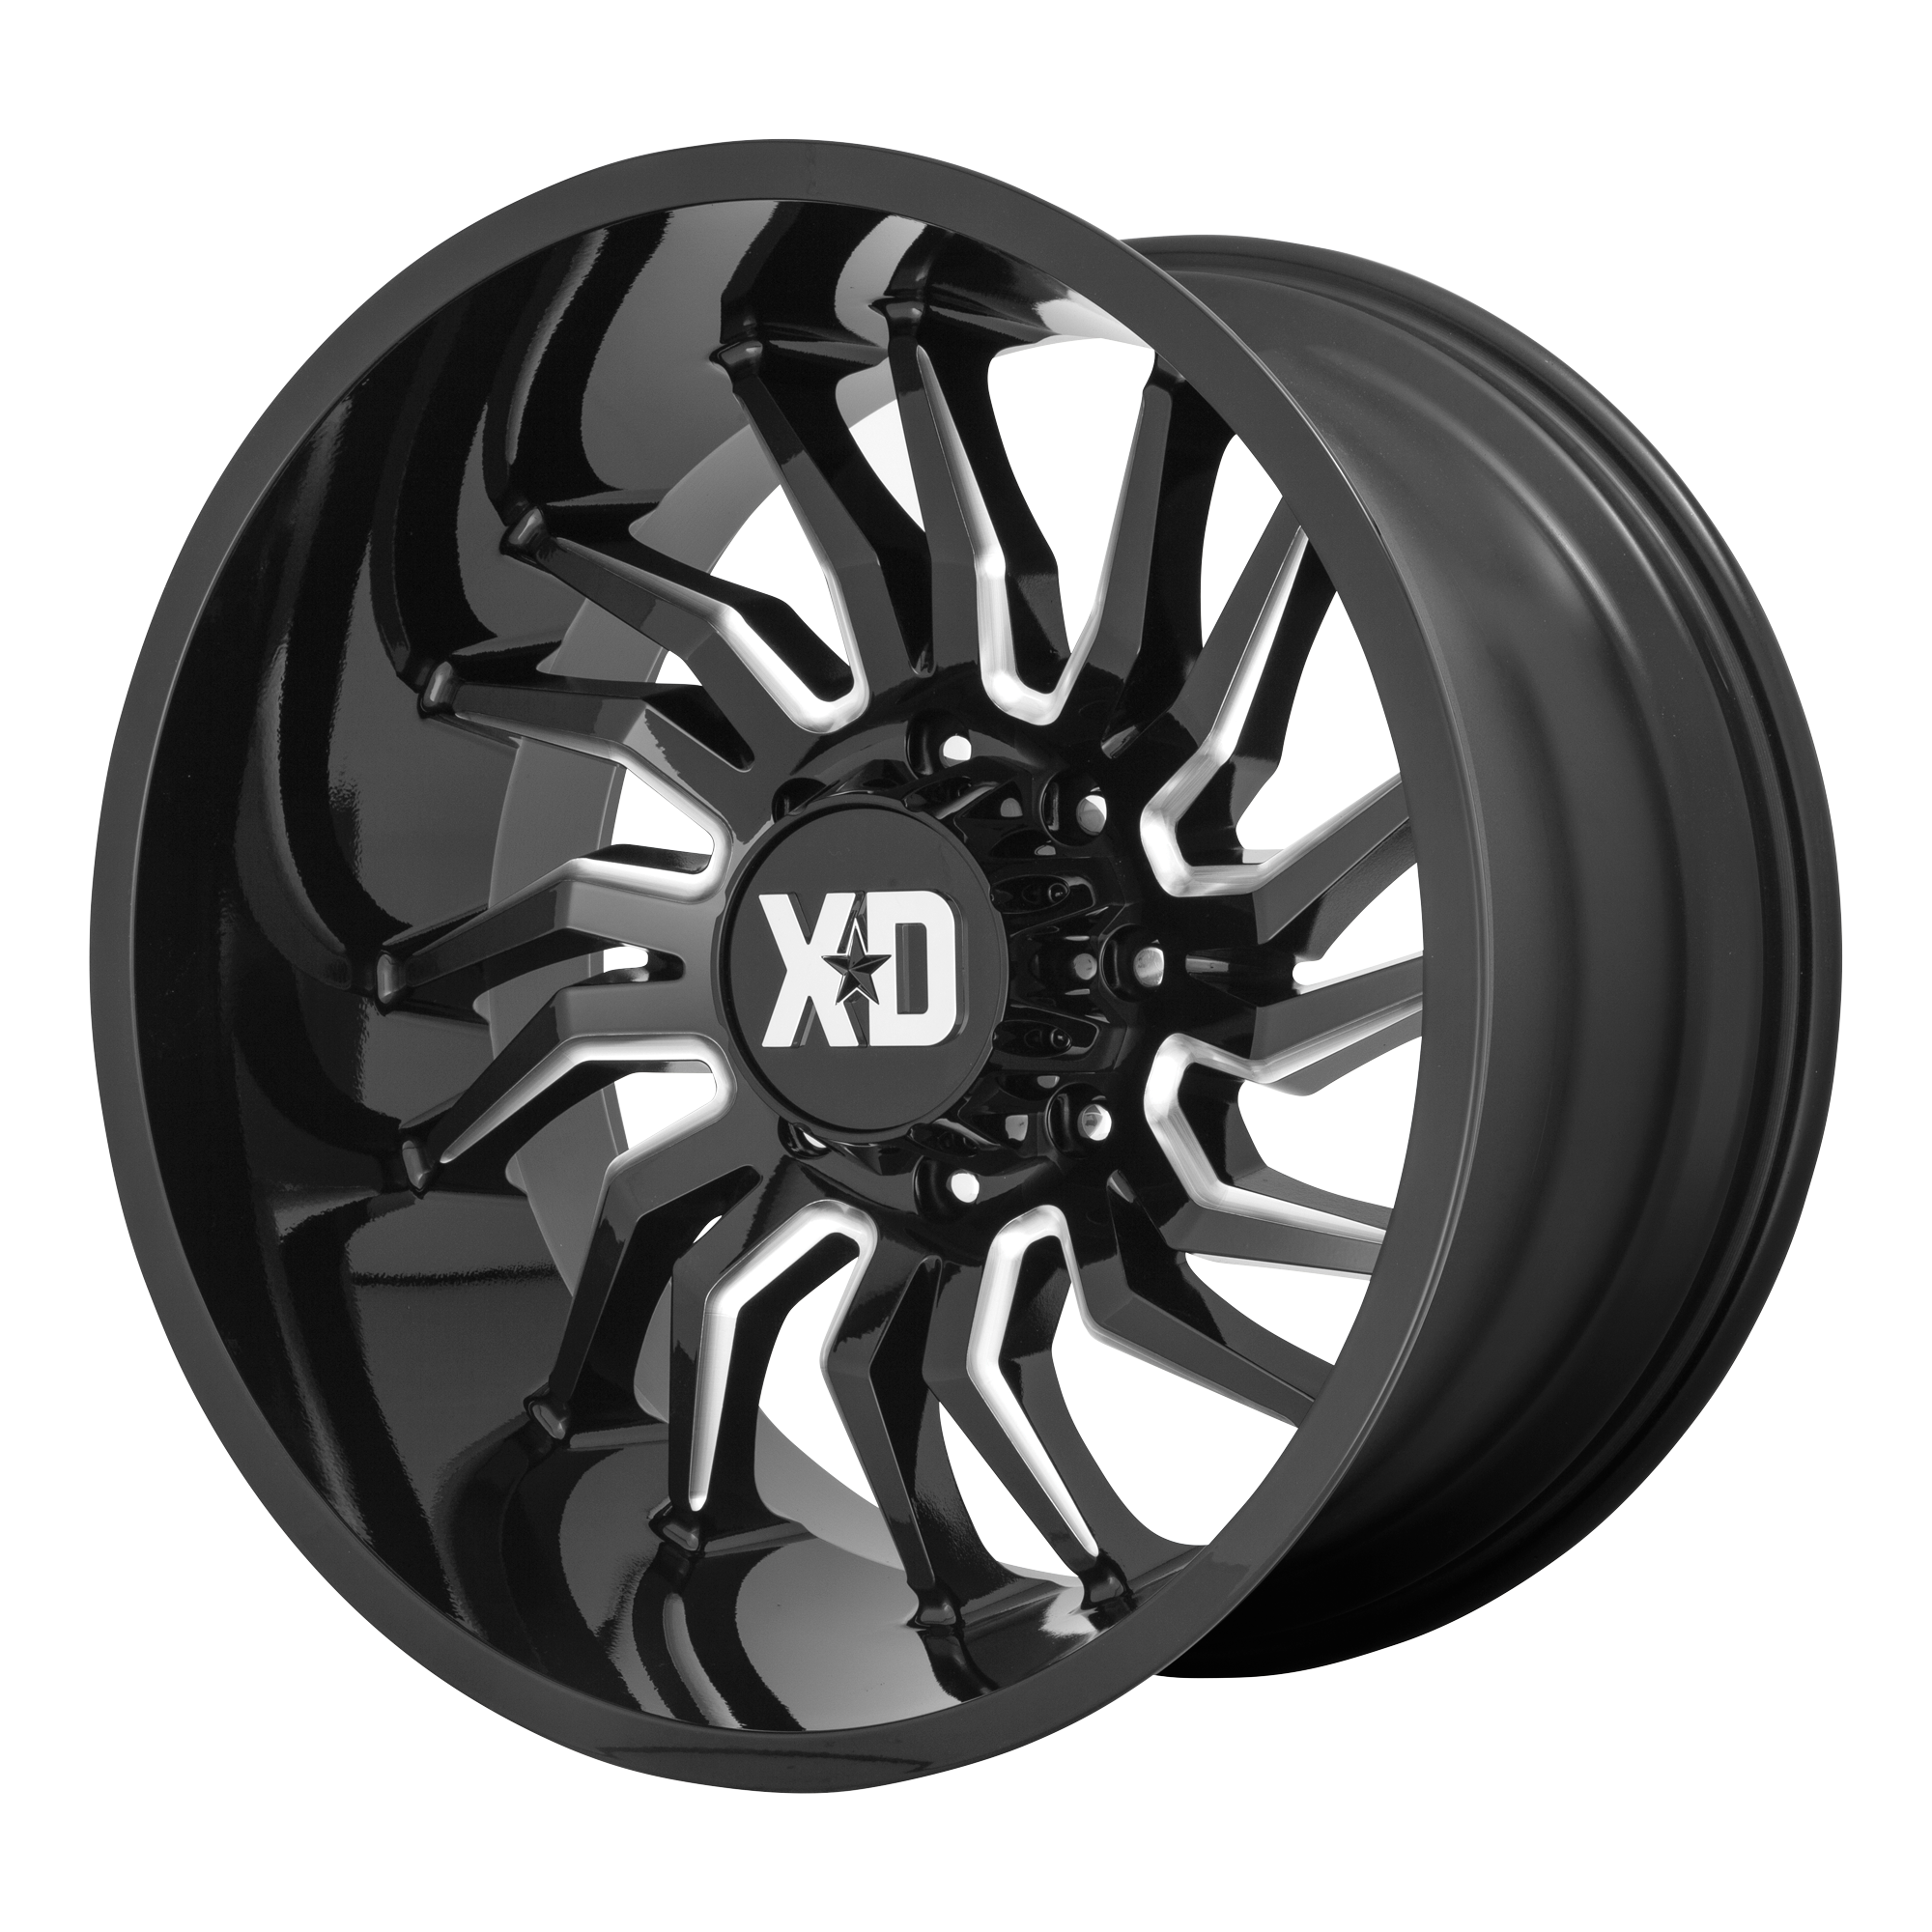 XD 22"x10" Non-Chrome Gloss Black Milled Custom Wheel ARSWCWXD85822068318N